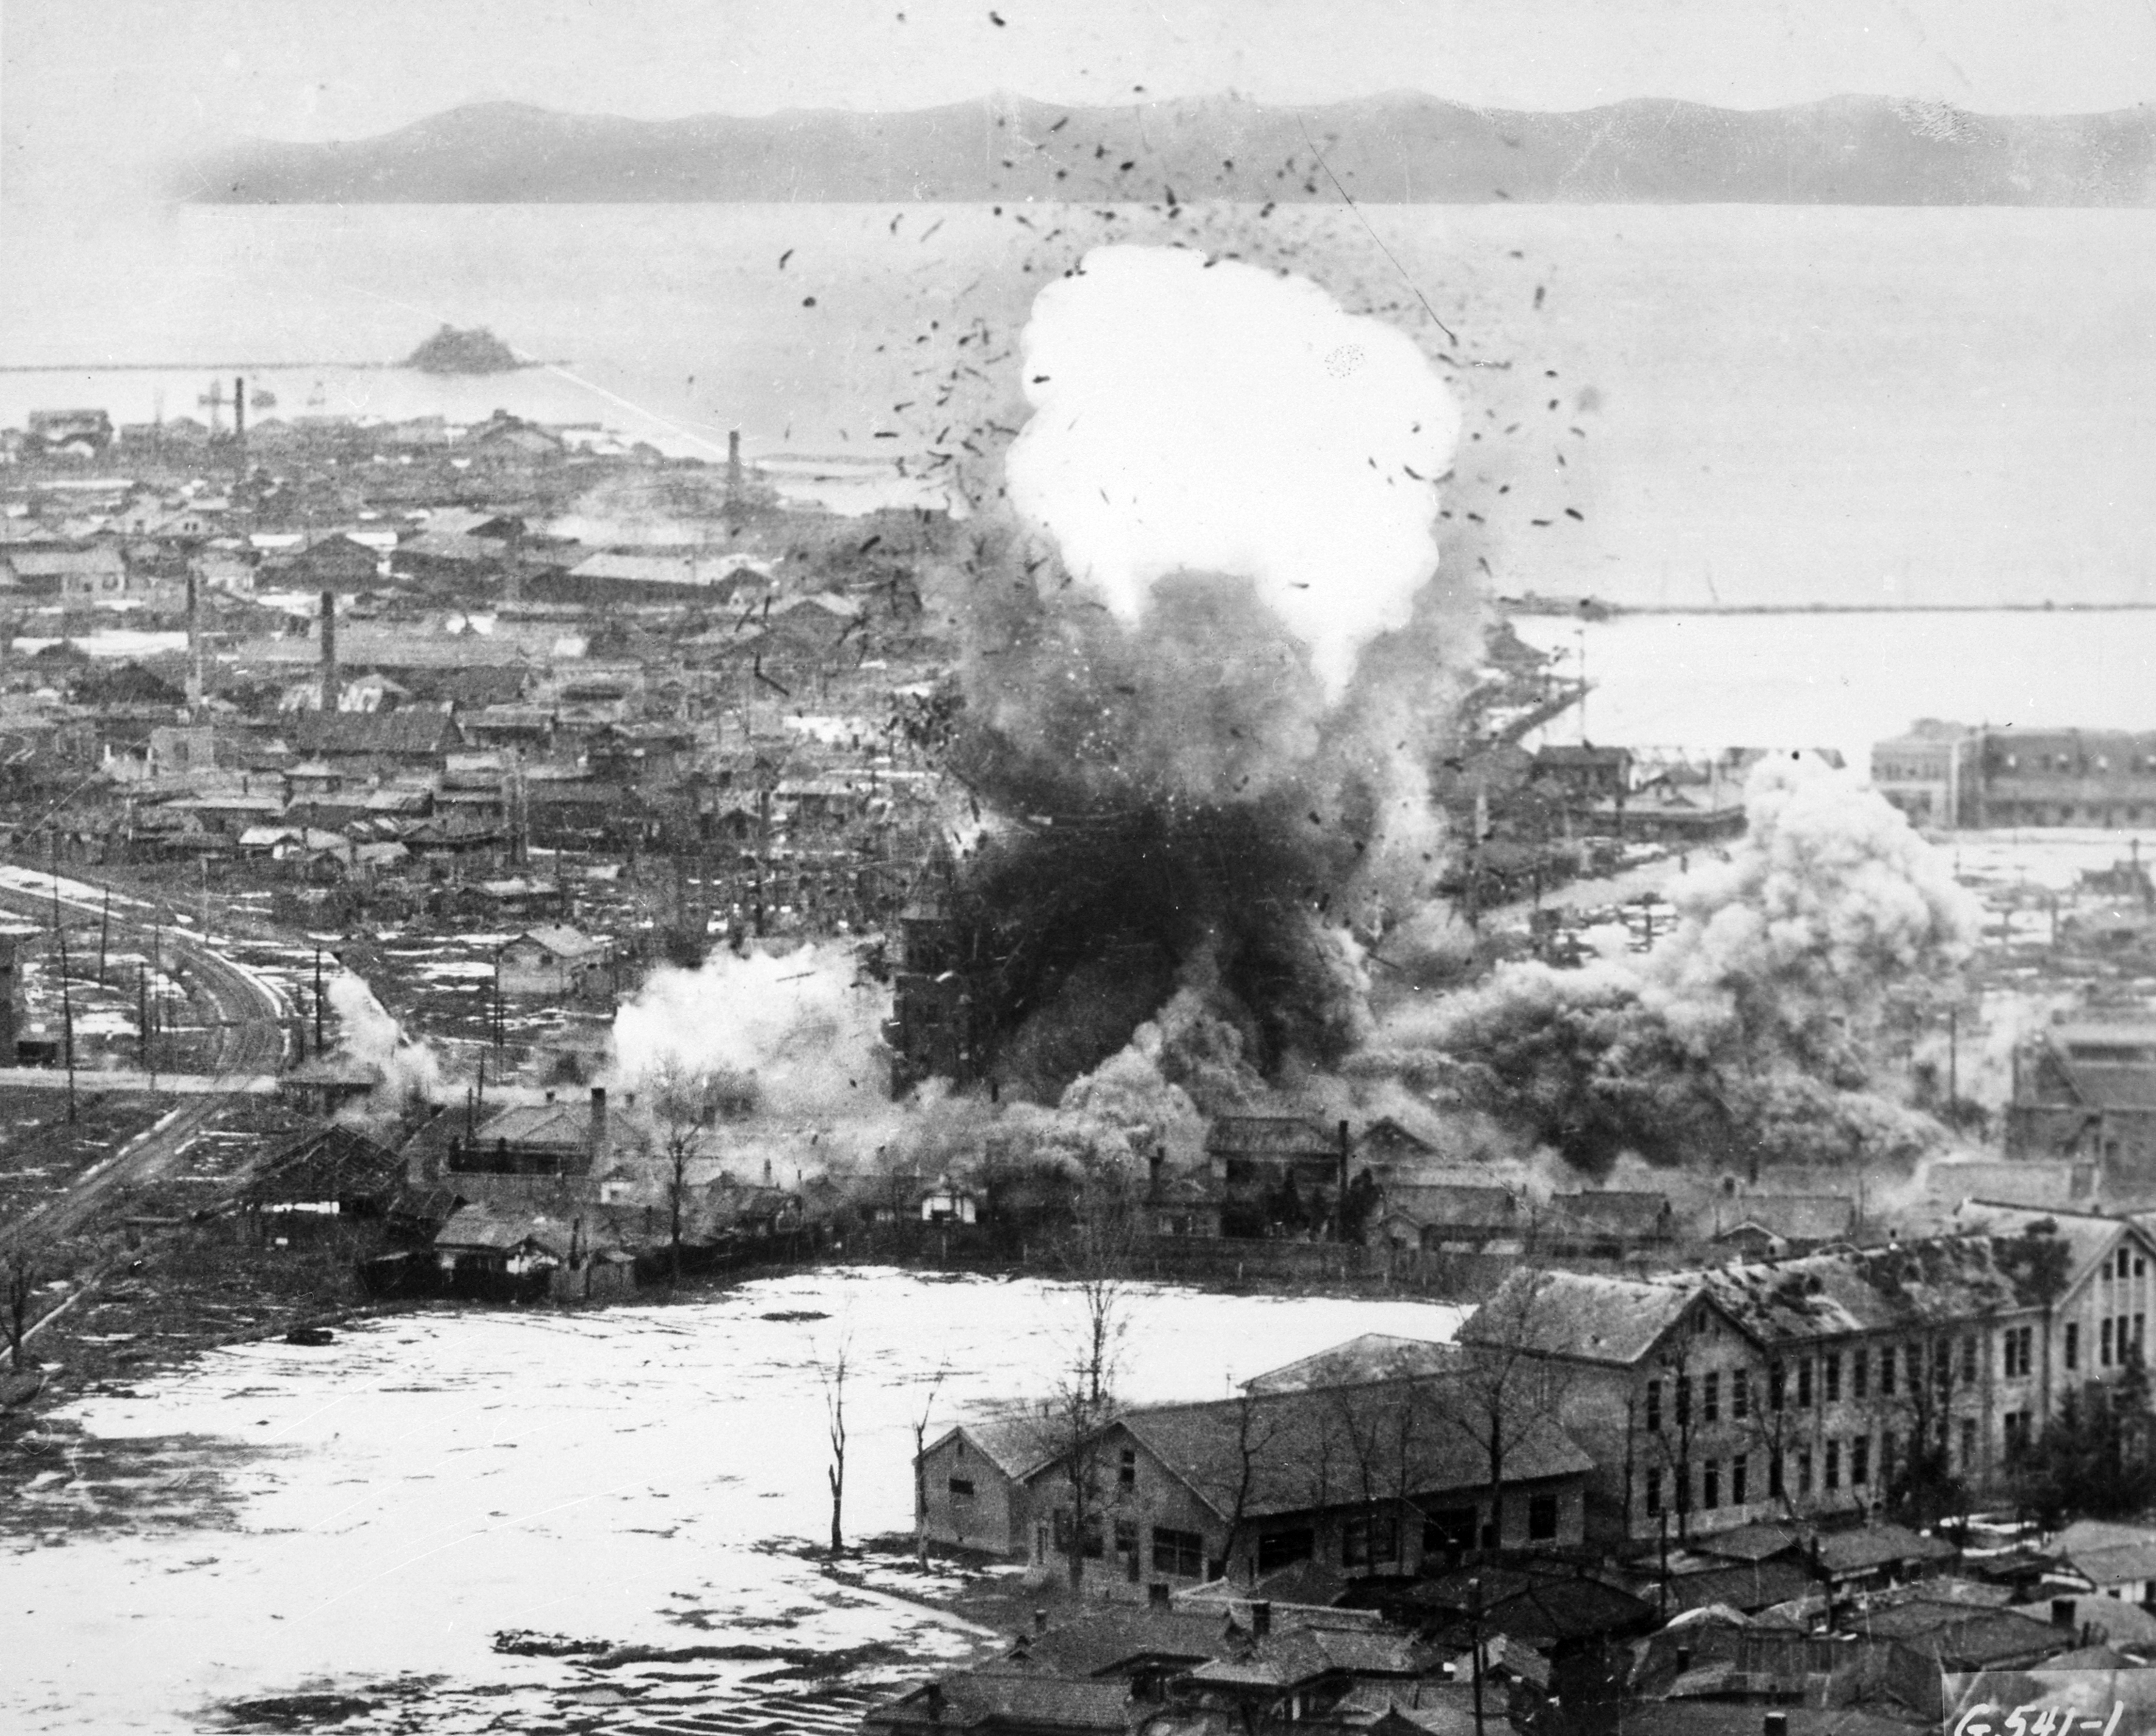 Was The Korean War A Just War?